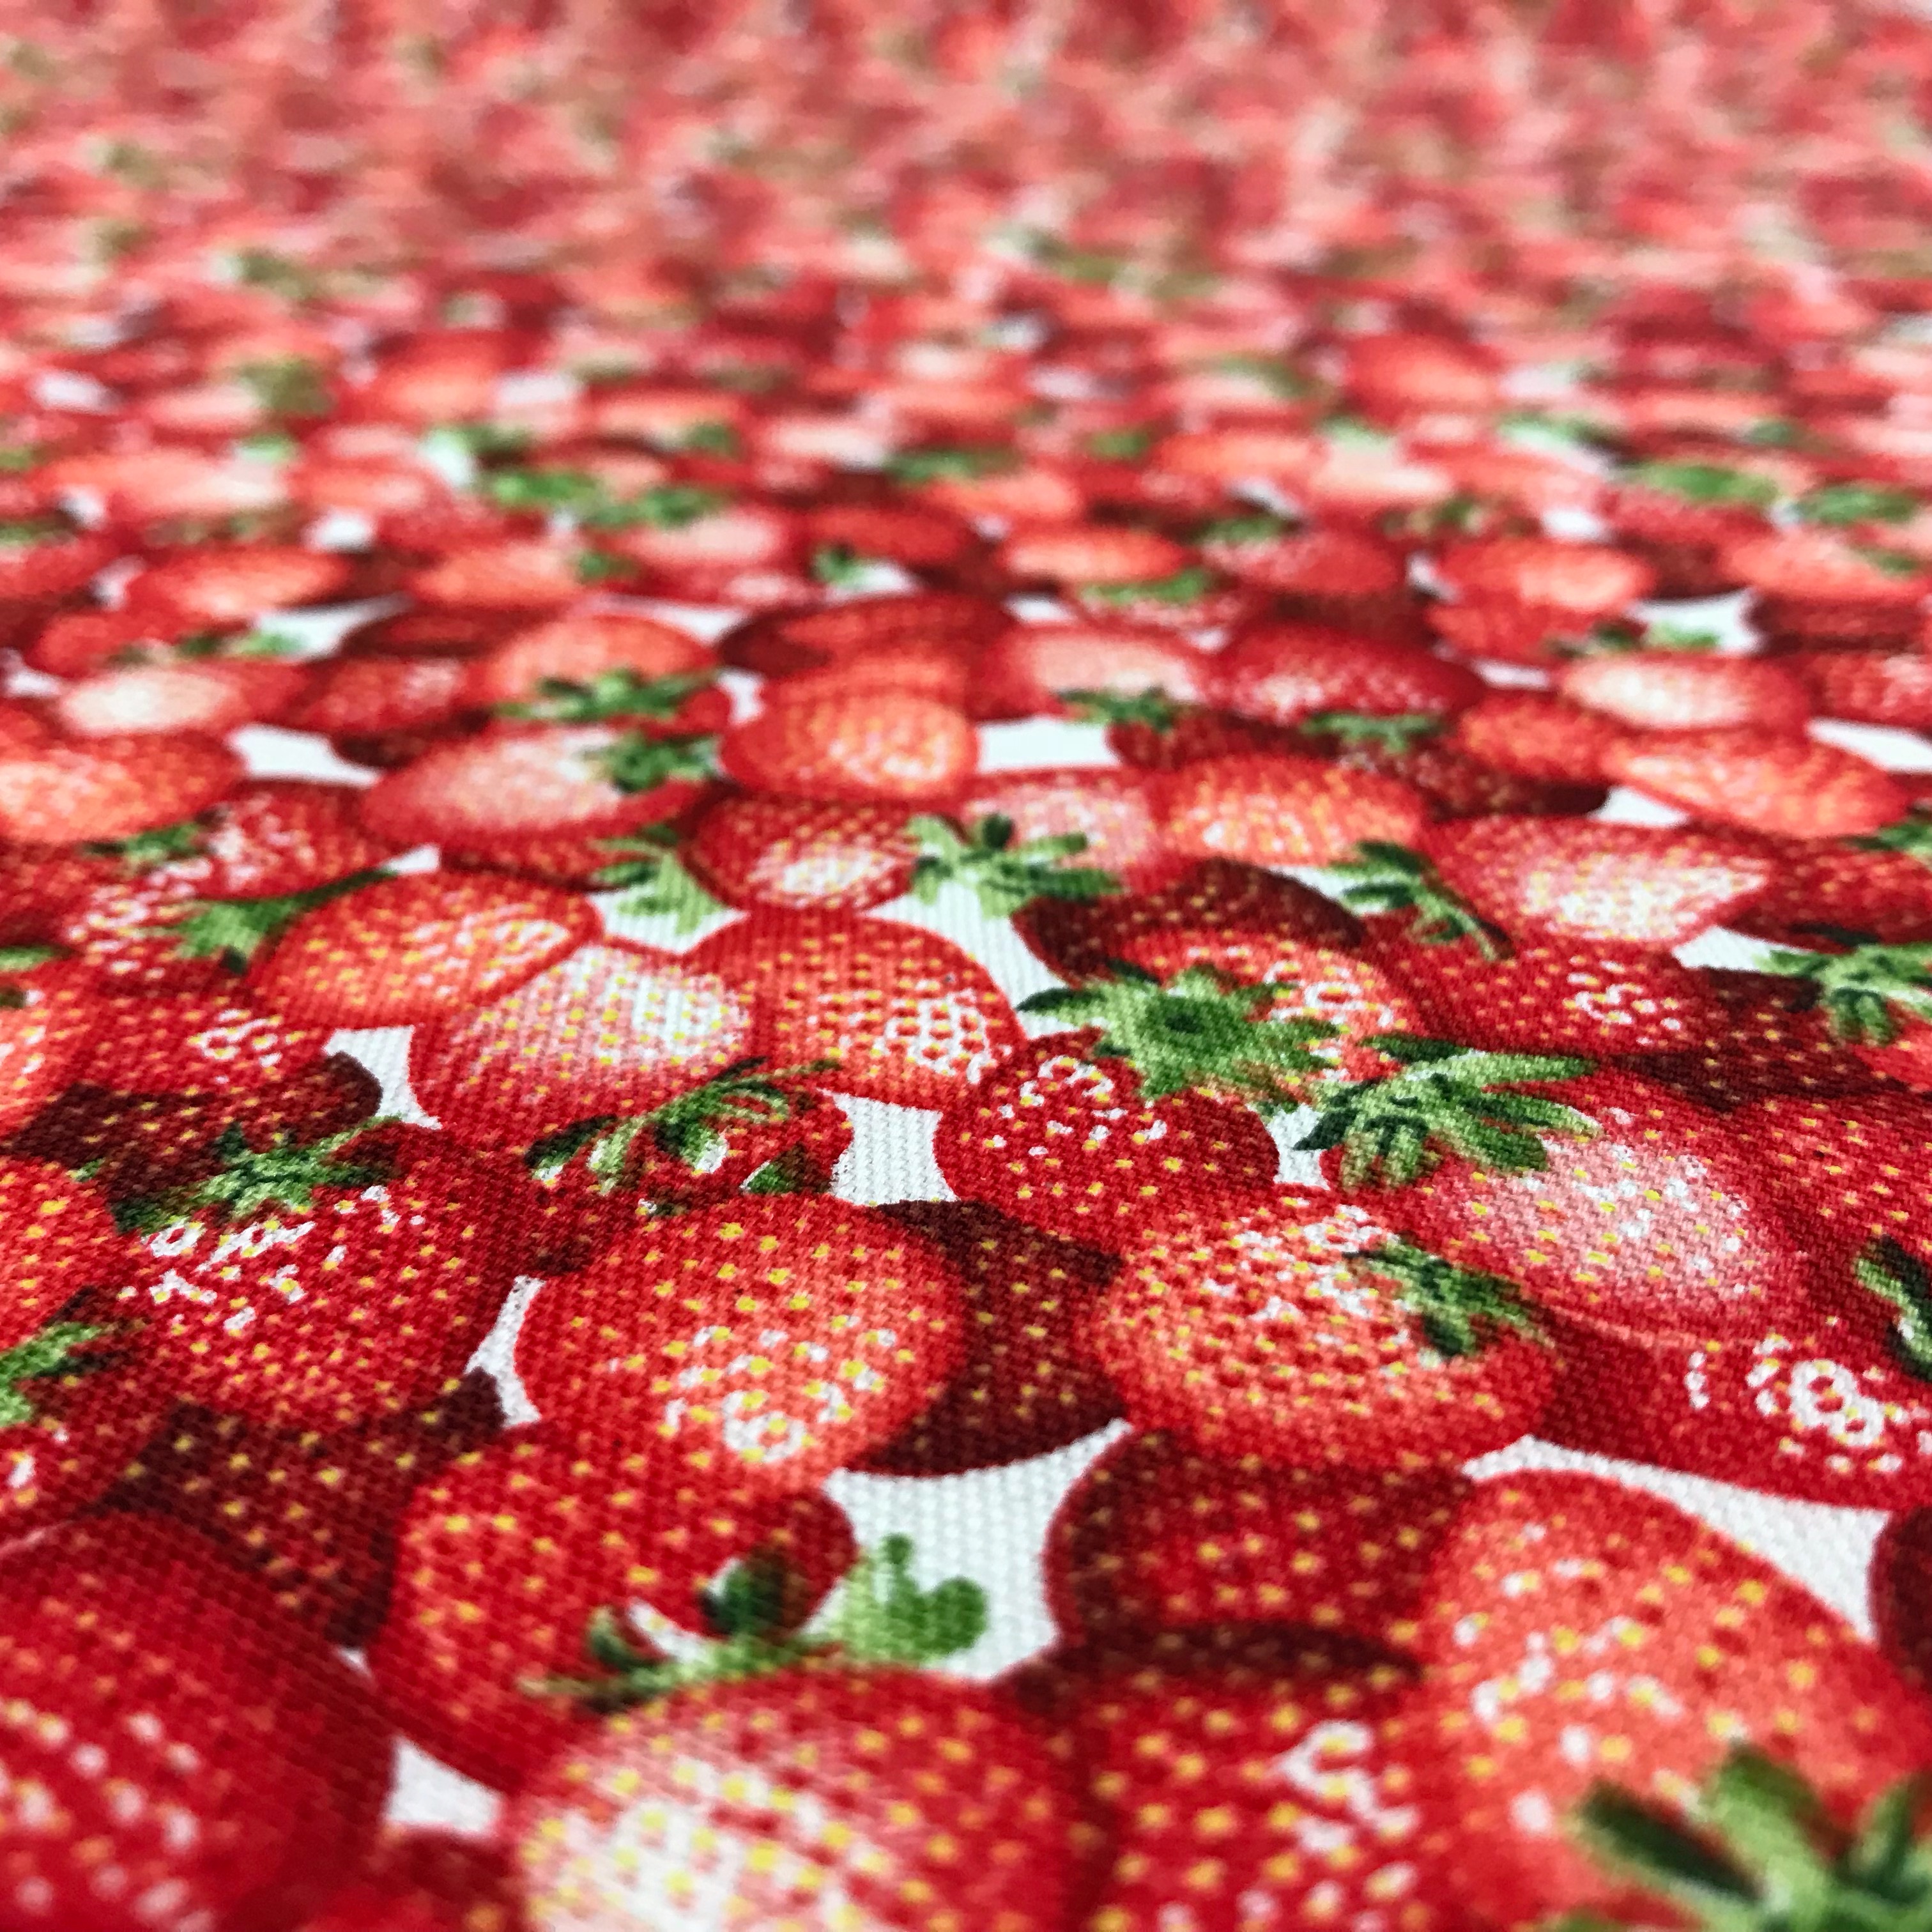 復刻オックスプリント 「イチゴがいっぱいの布」 | 大塚屋ネットショップ